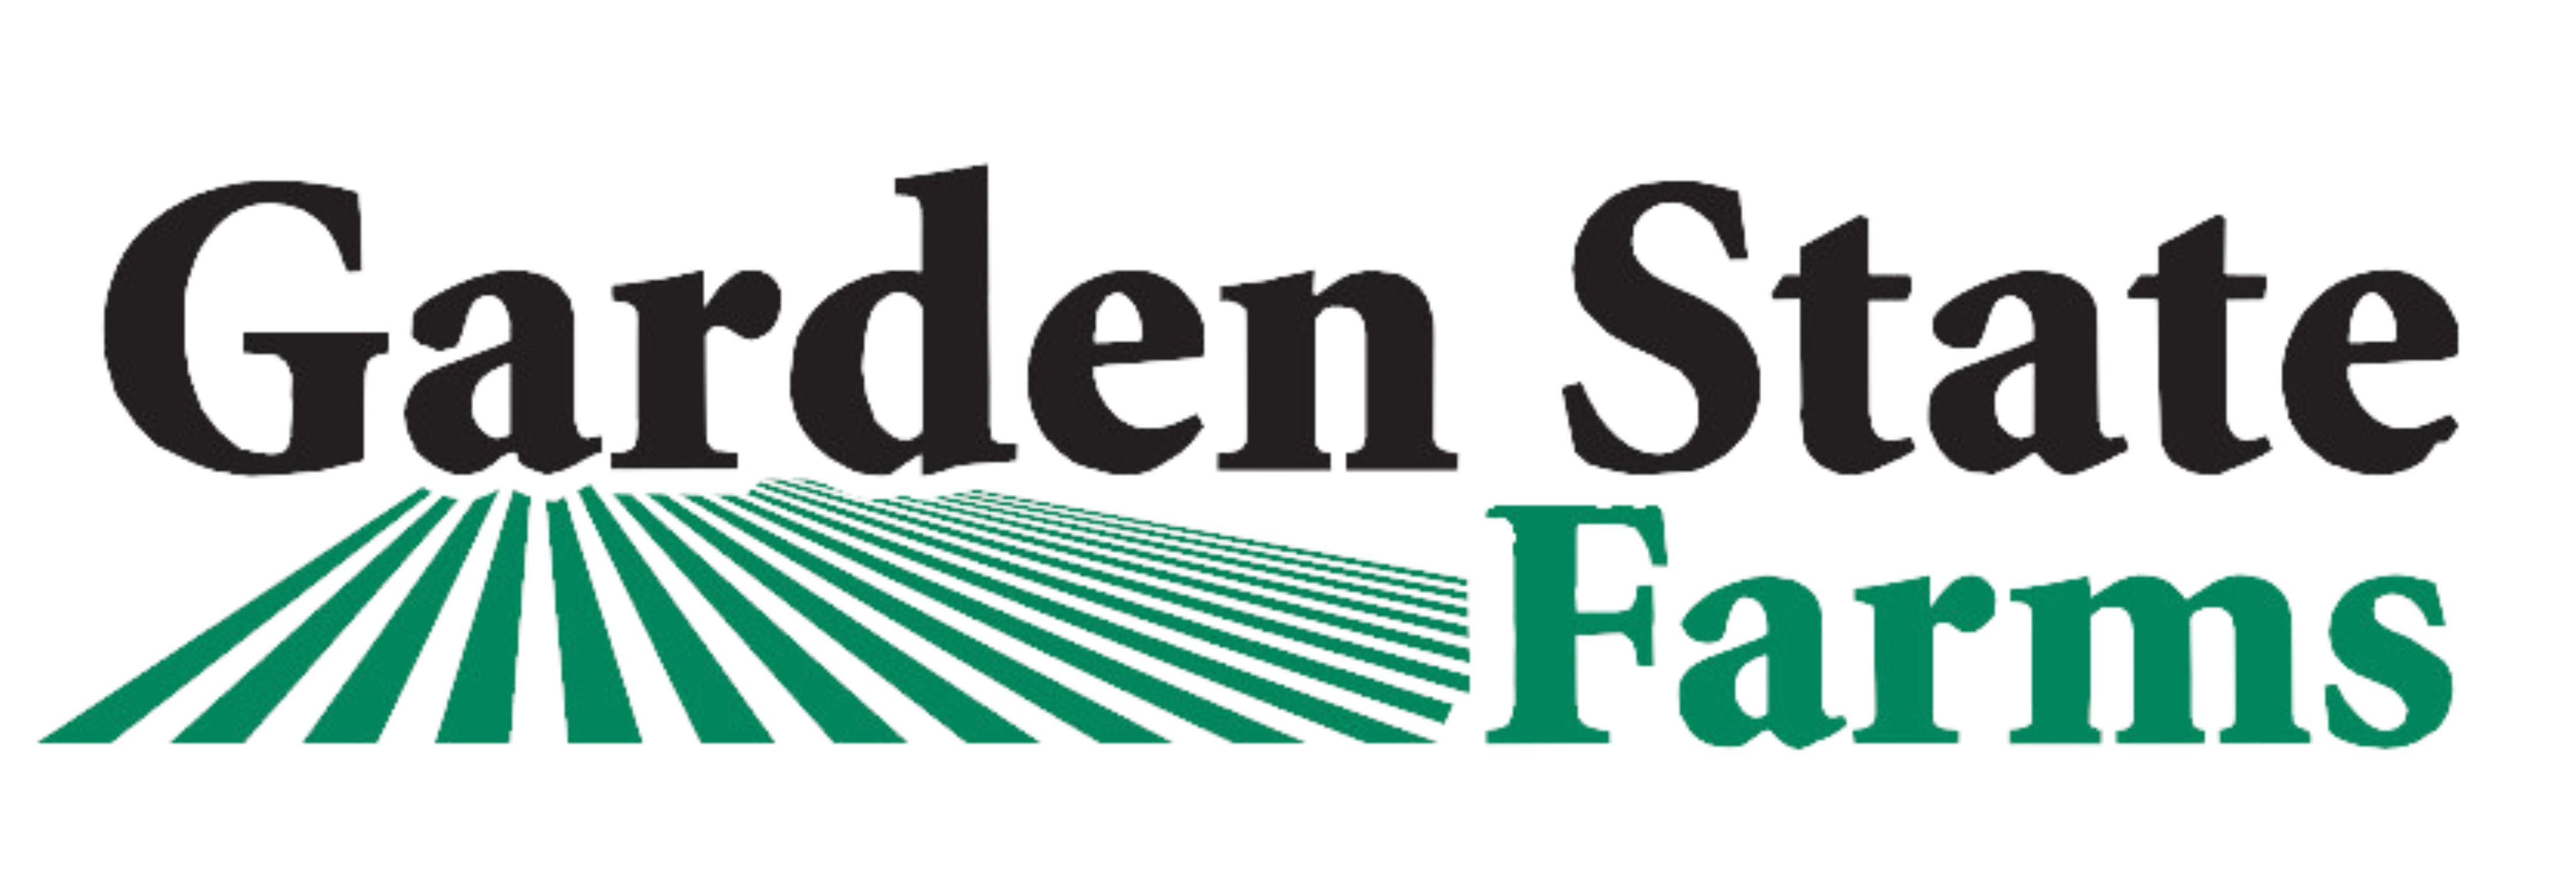 Garden State Farms logo